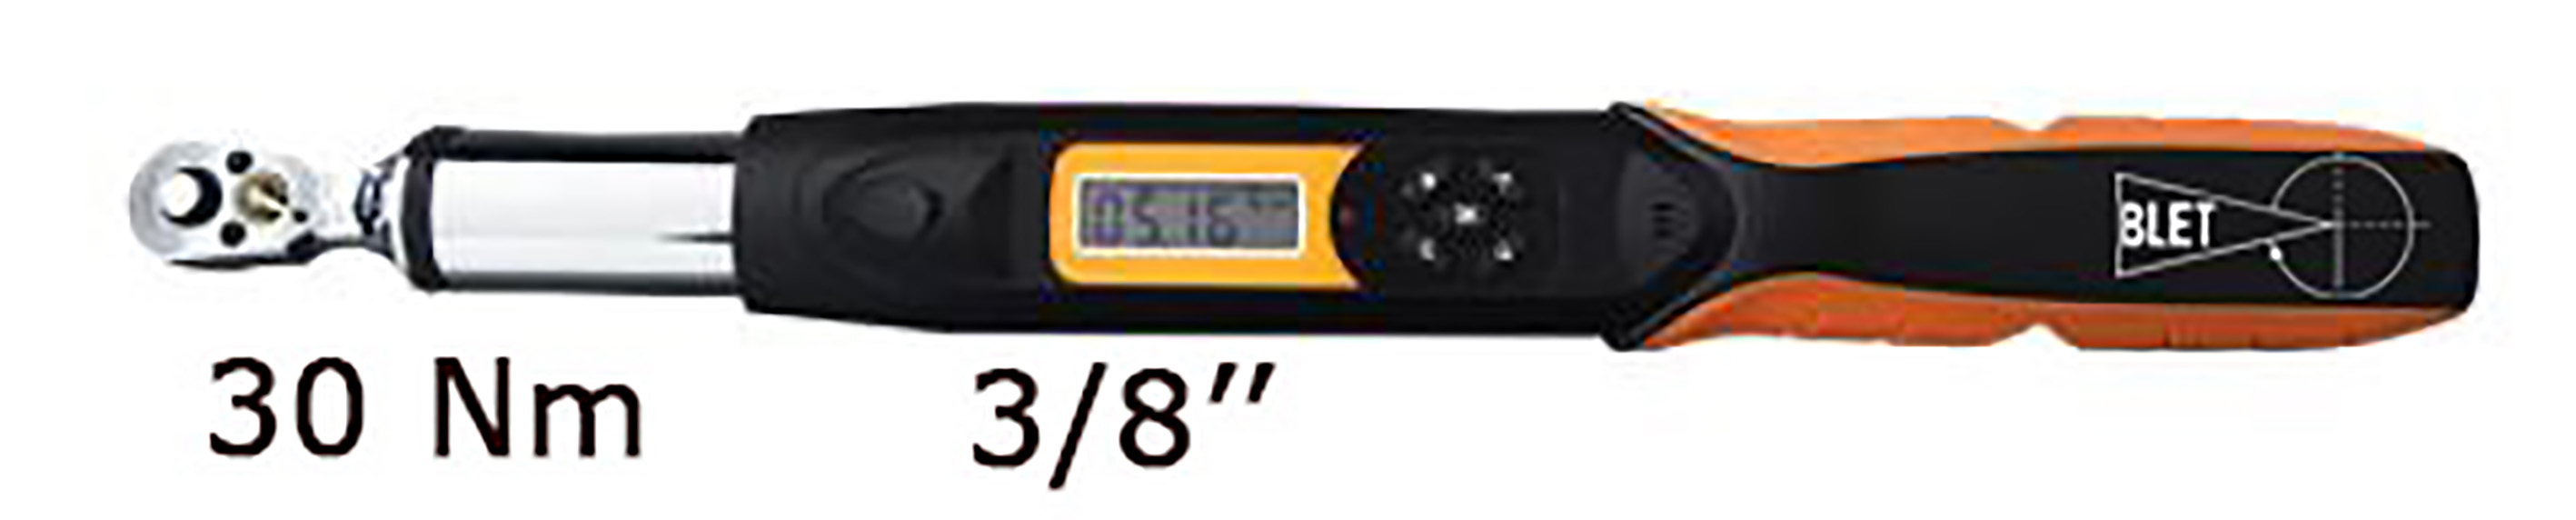 CLE DYNAMOMETRIQUE ELECTRONIQUE AVEC COMMUNICATION 30 Nm LECTURE 0,01 Nm TAILLE 3/8" BLET<br>Ref : CLET5-CDP03038